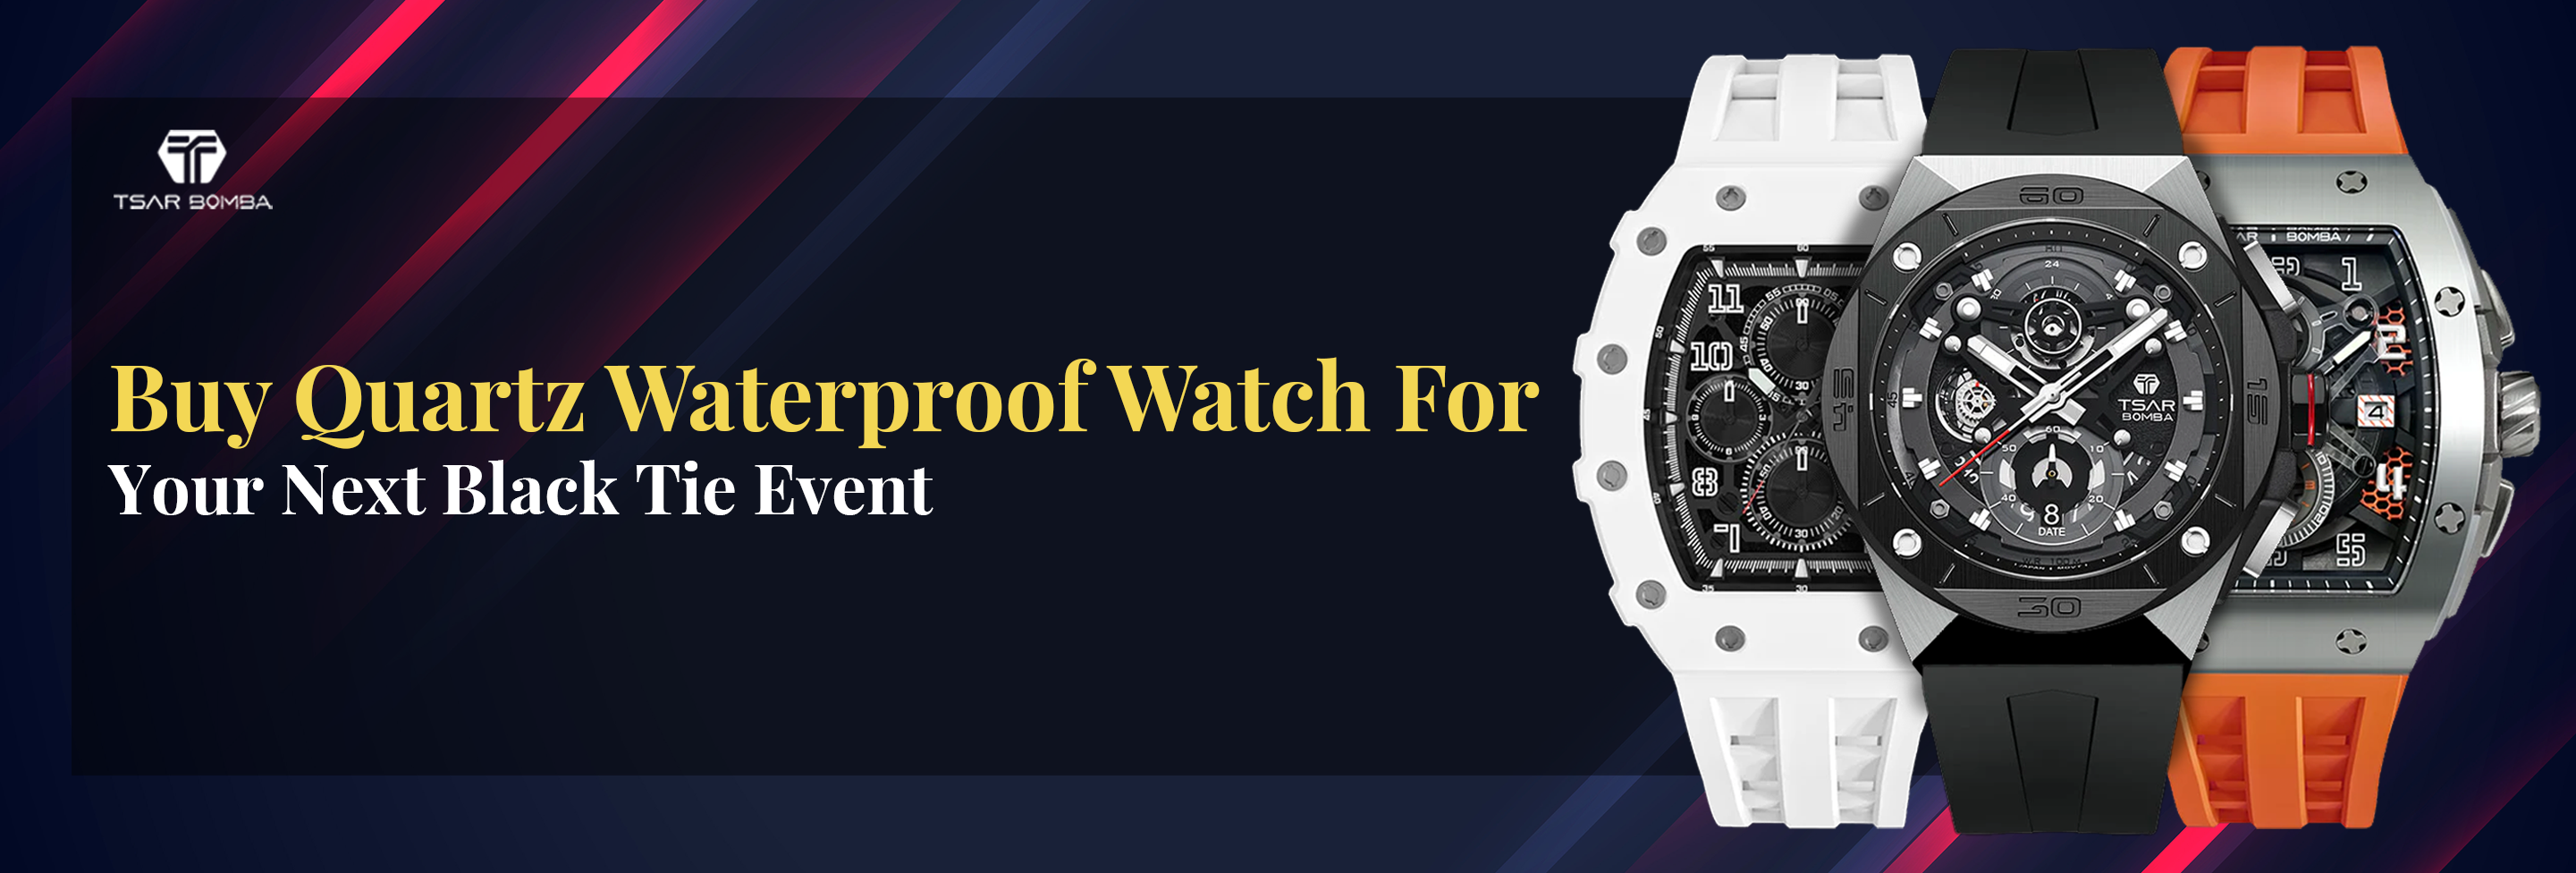 Buy Quartz Waterproof Watch For Your Next Black Tie Event